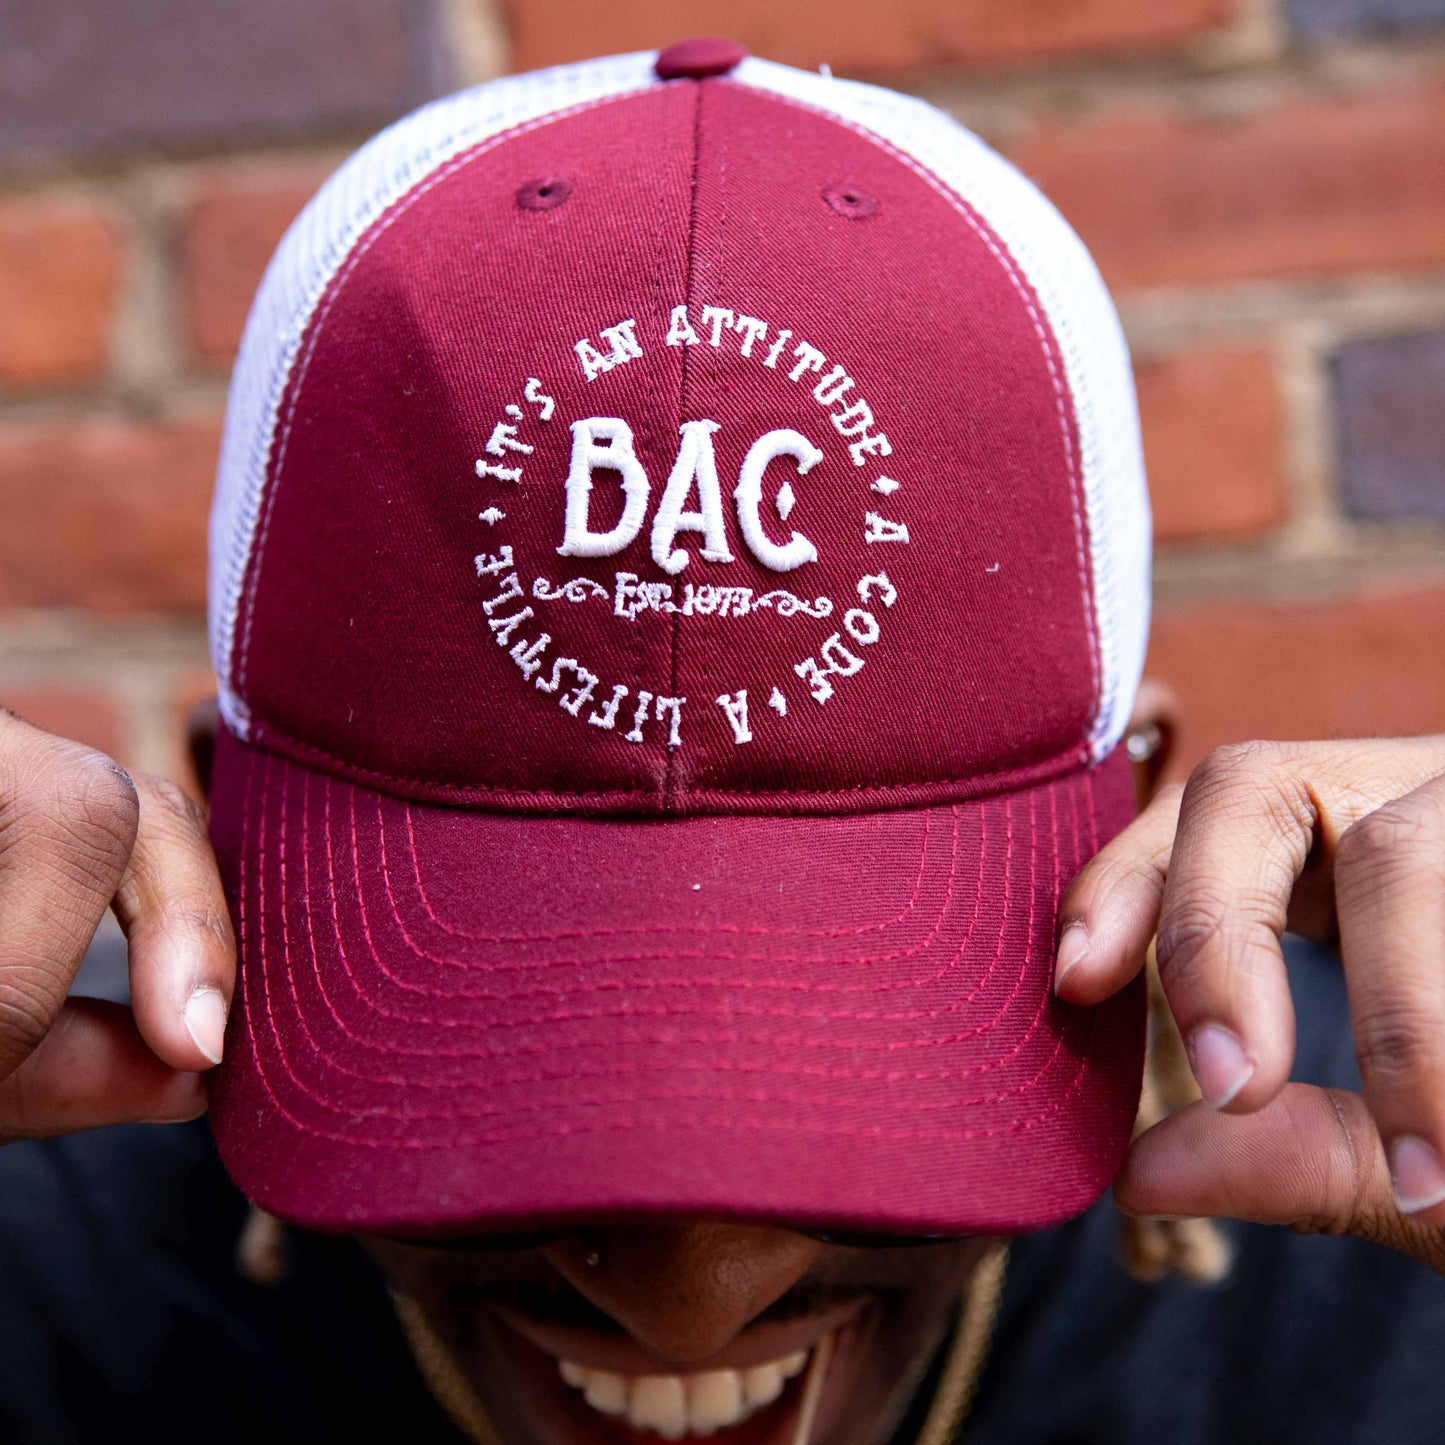 BadAssCowboy Embroidered Logo Mesh Back Trucker Hat